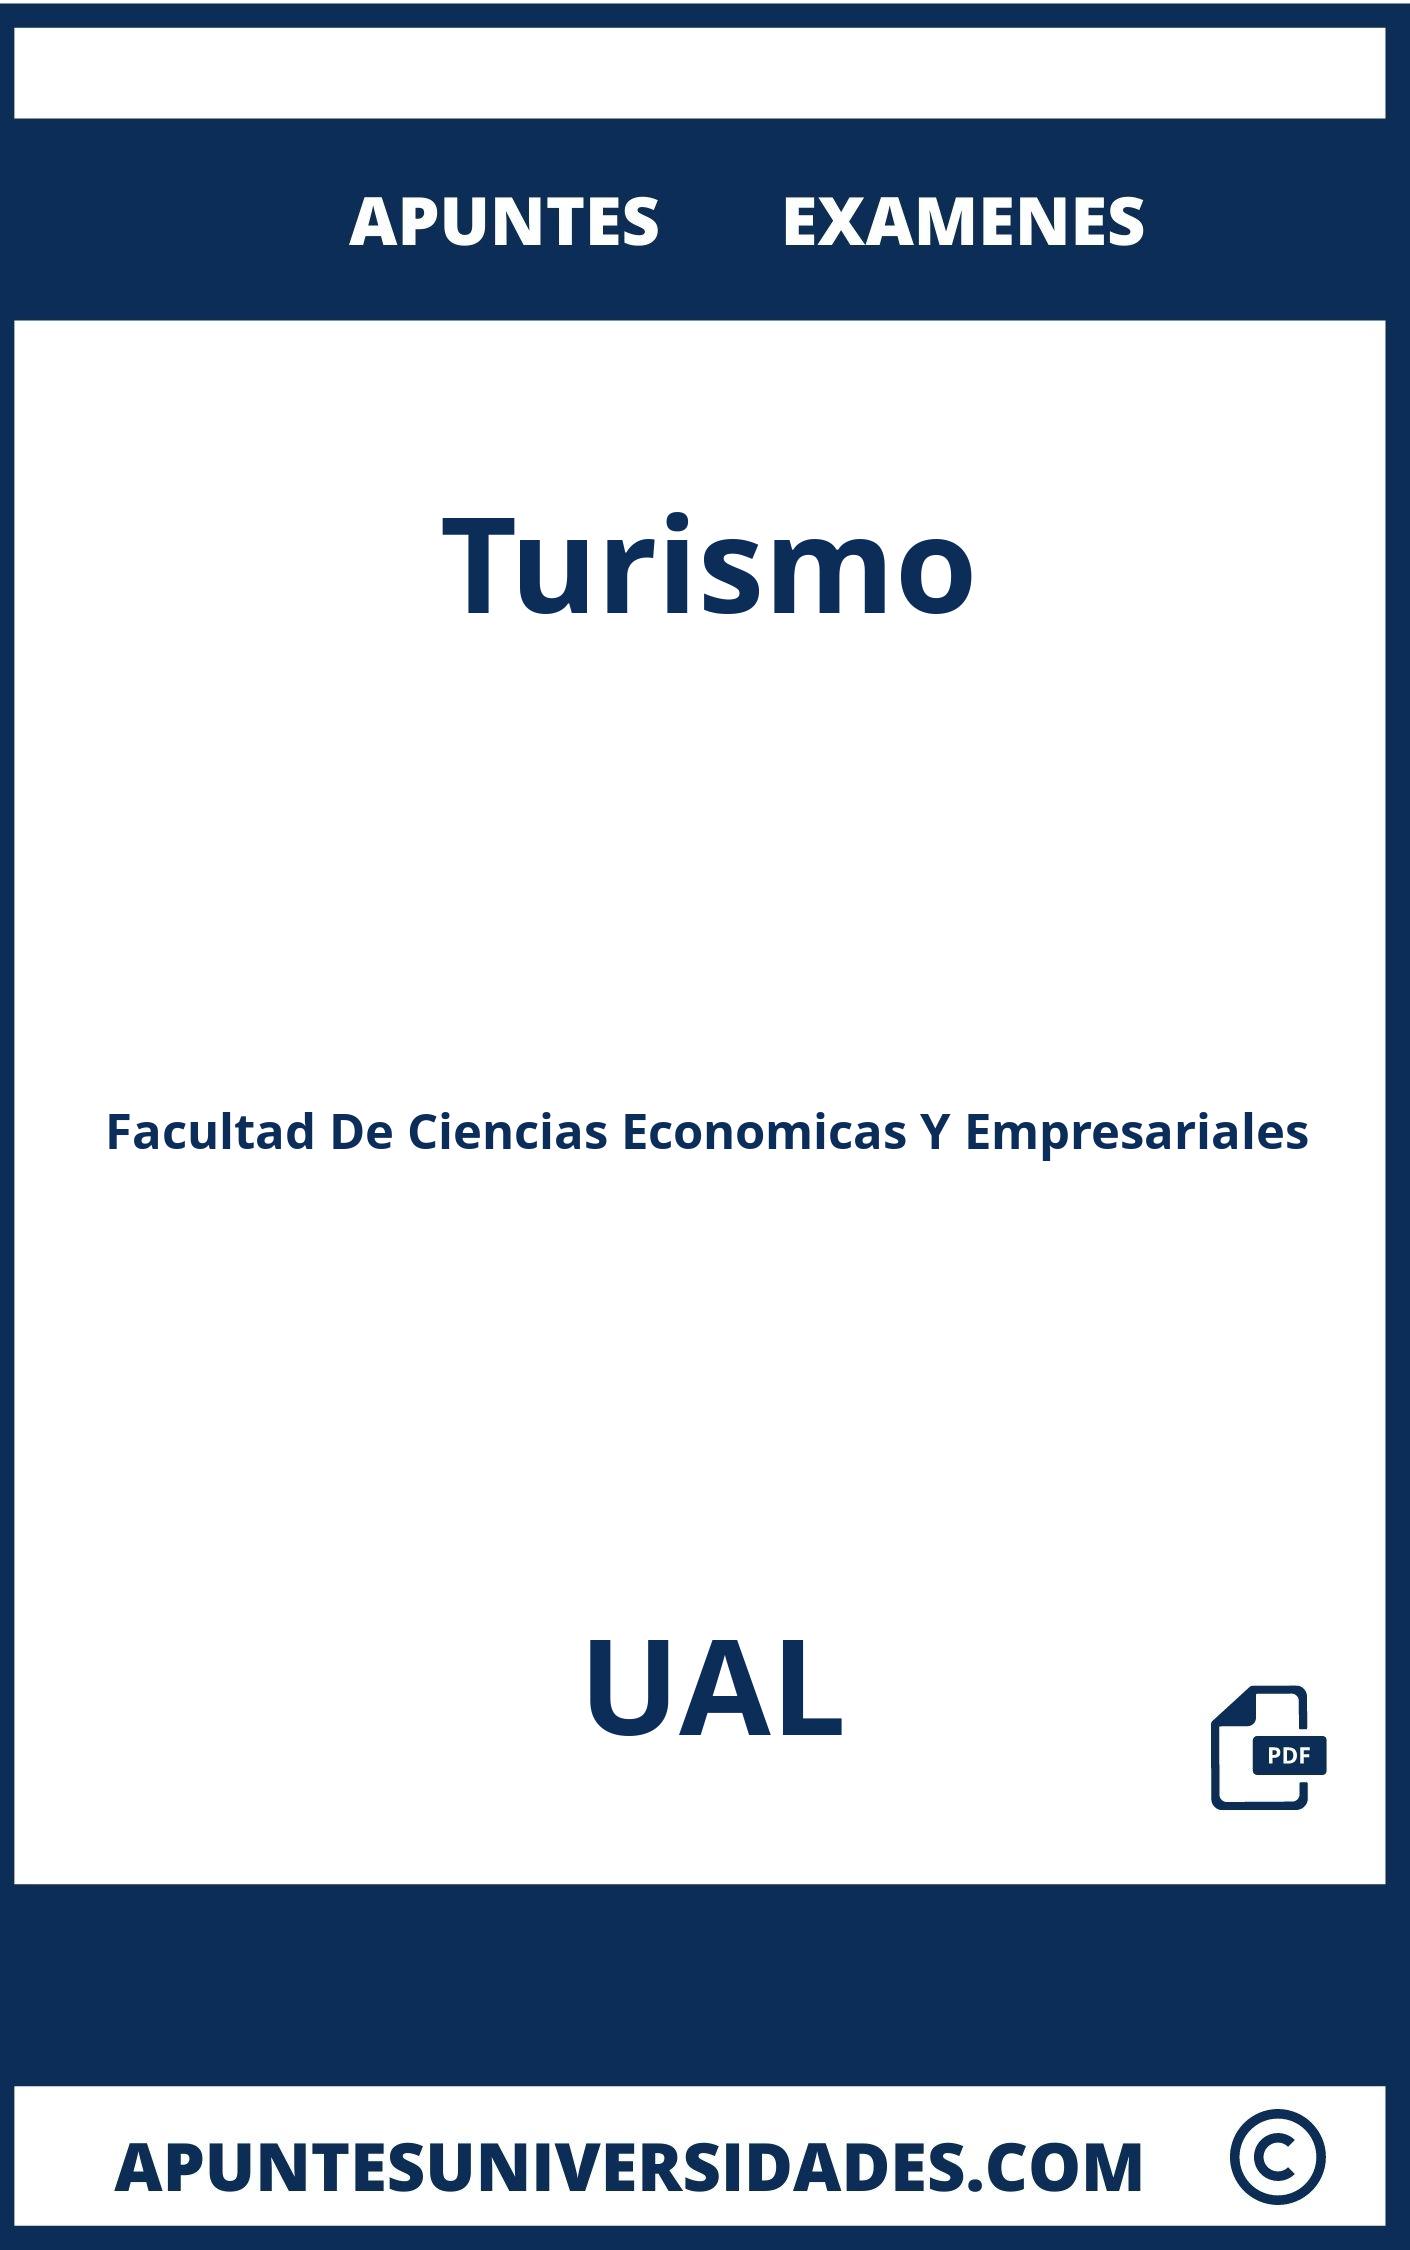 Apuntes Examenes Turismo UAL